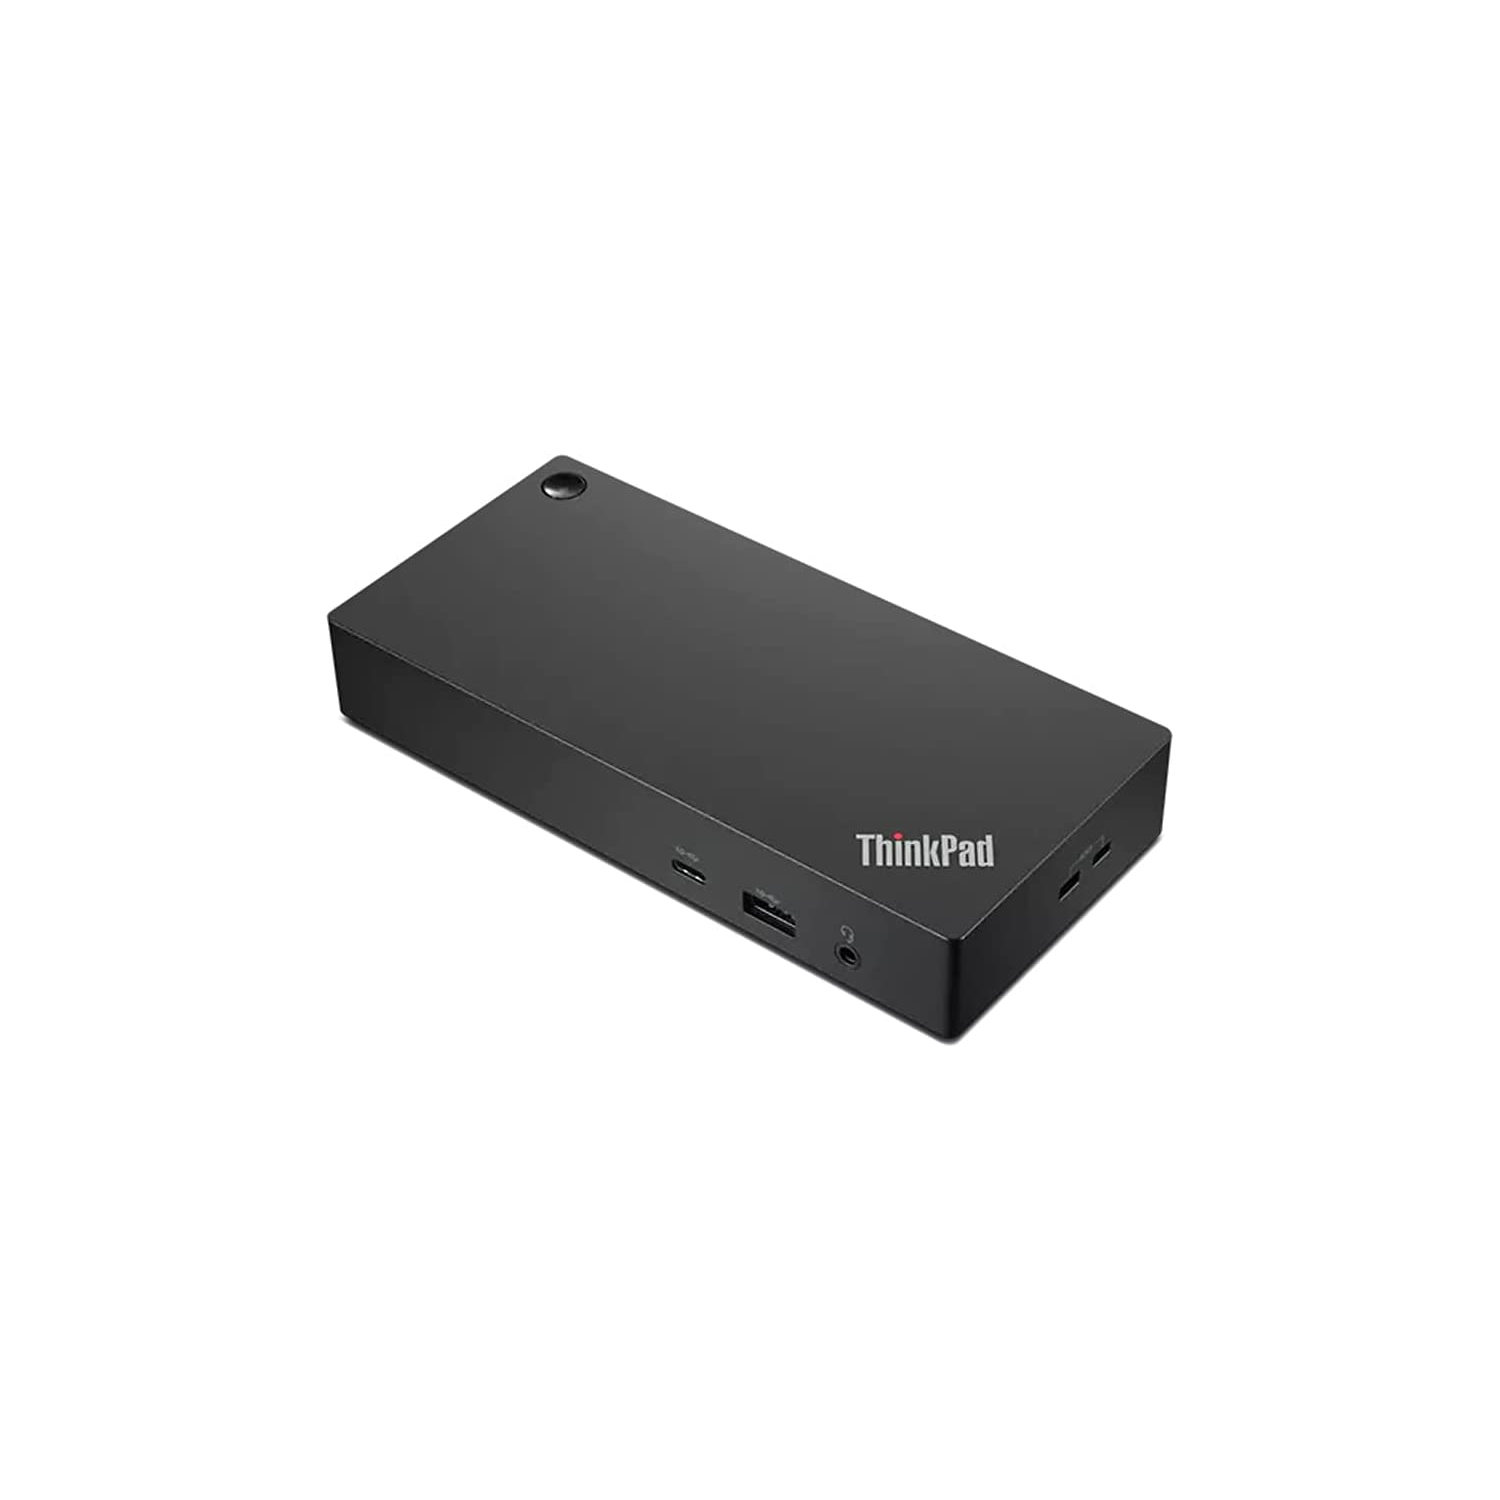 Lenovo ThinkPad 4K Ultra HD Universal USB-C Dock w/ 2x Display Port, 1x HDMI Port (Support up to 3 Monitors) (2022 model)